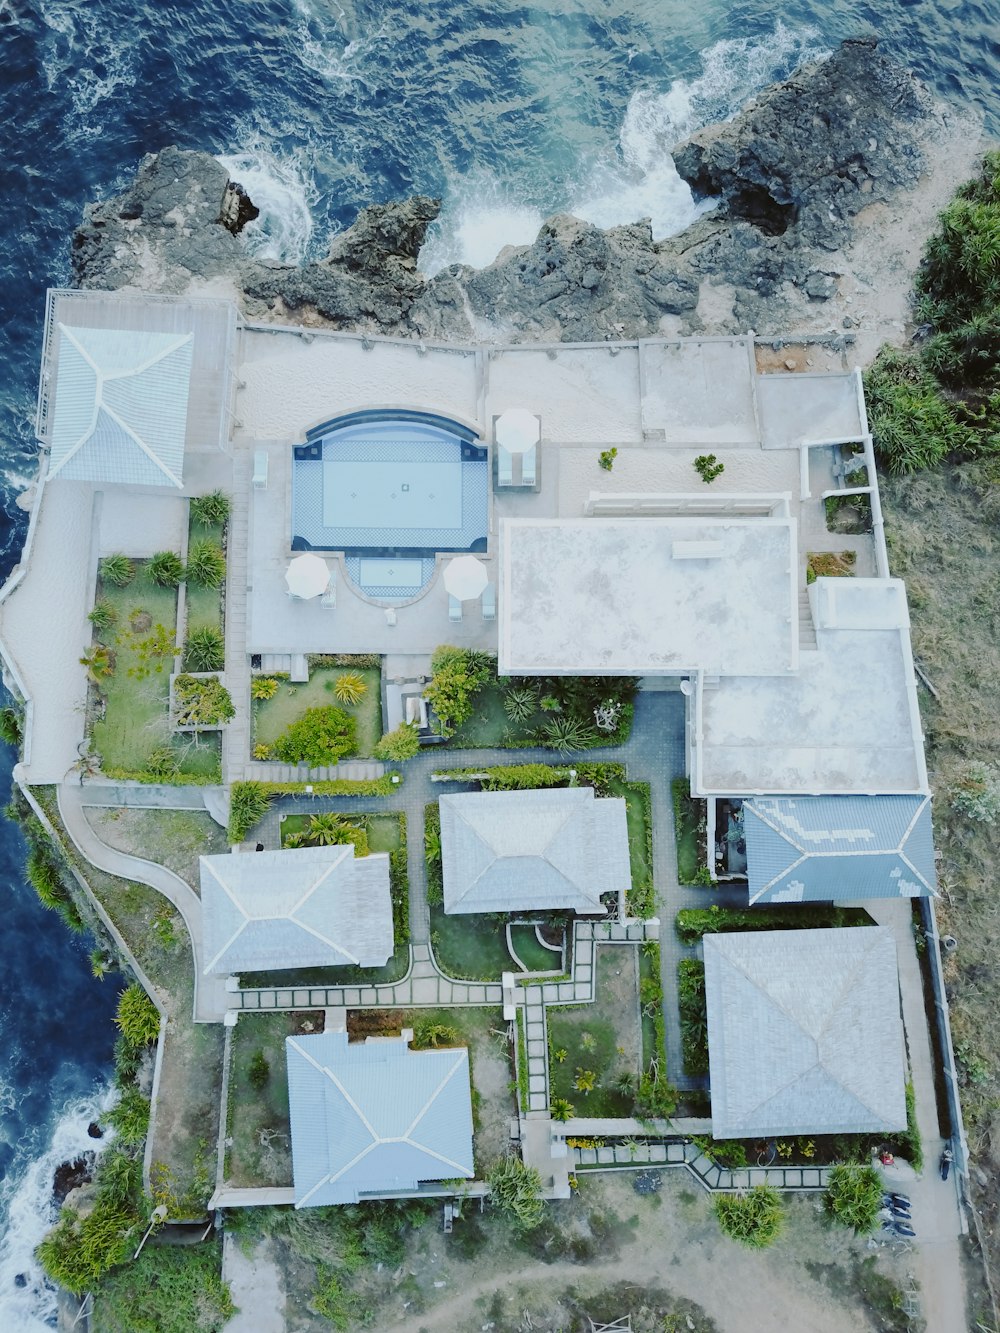 Fotografia aerea della casa accanto allo specchio d'acqua